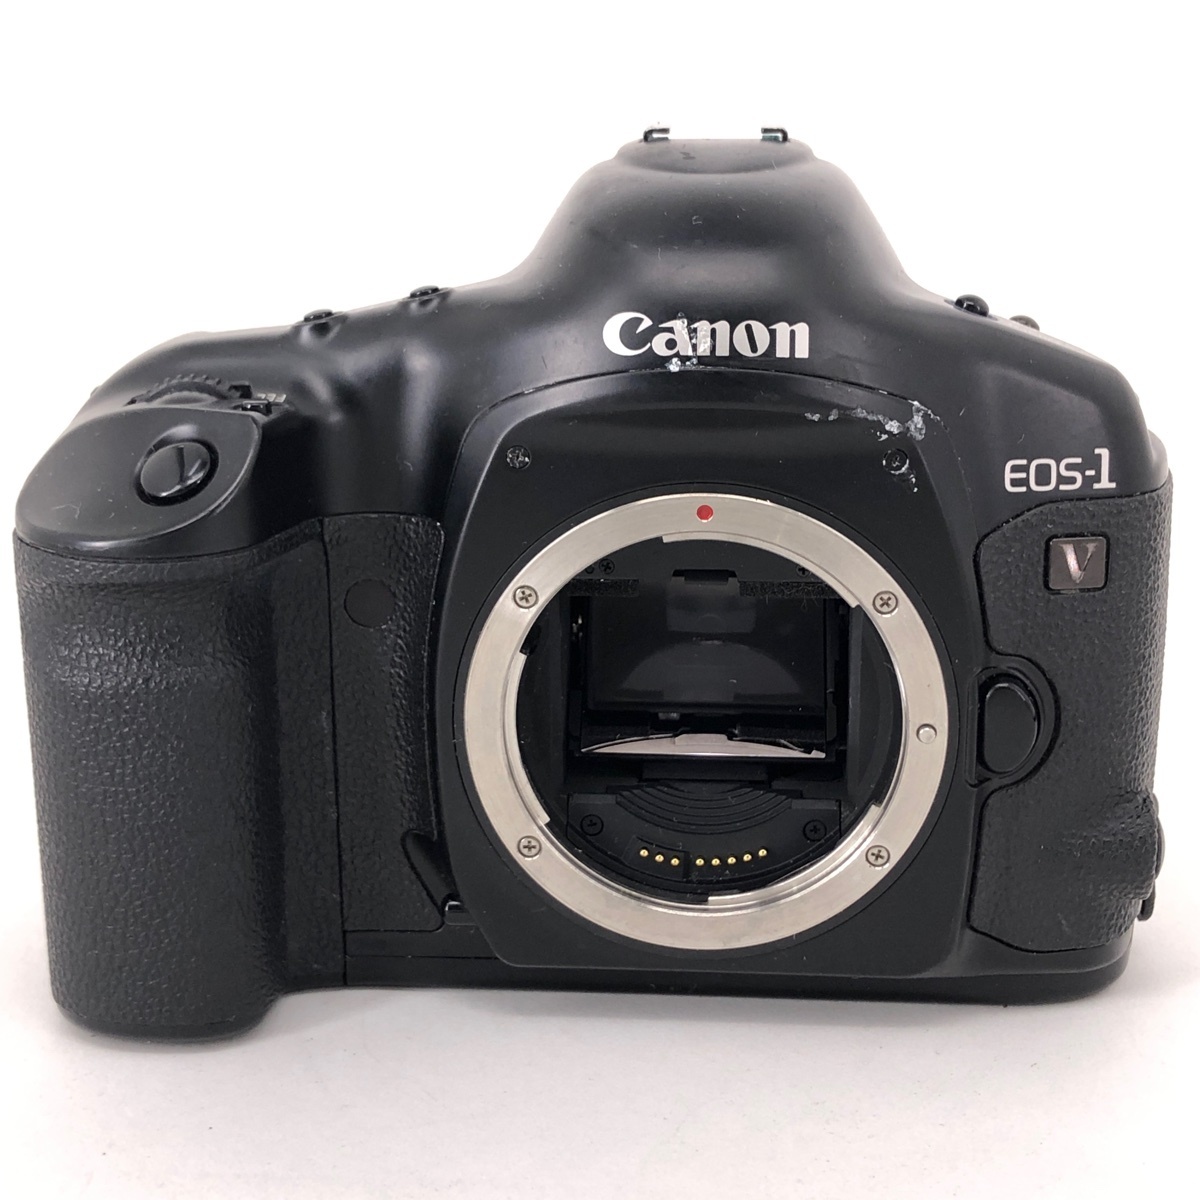 キヤノン Canon EOS-1V ボディ フィルム オートフォーカス 一眼レフカメラ